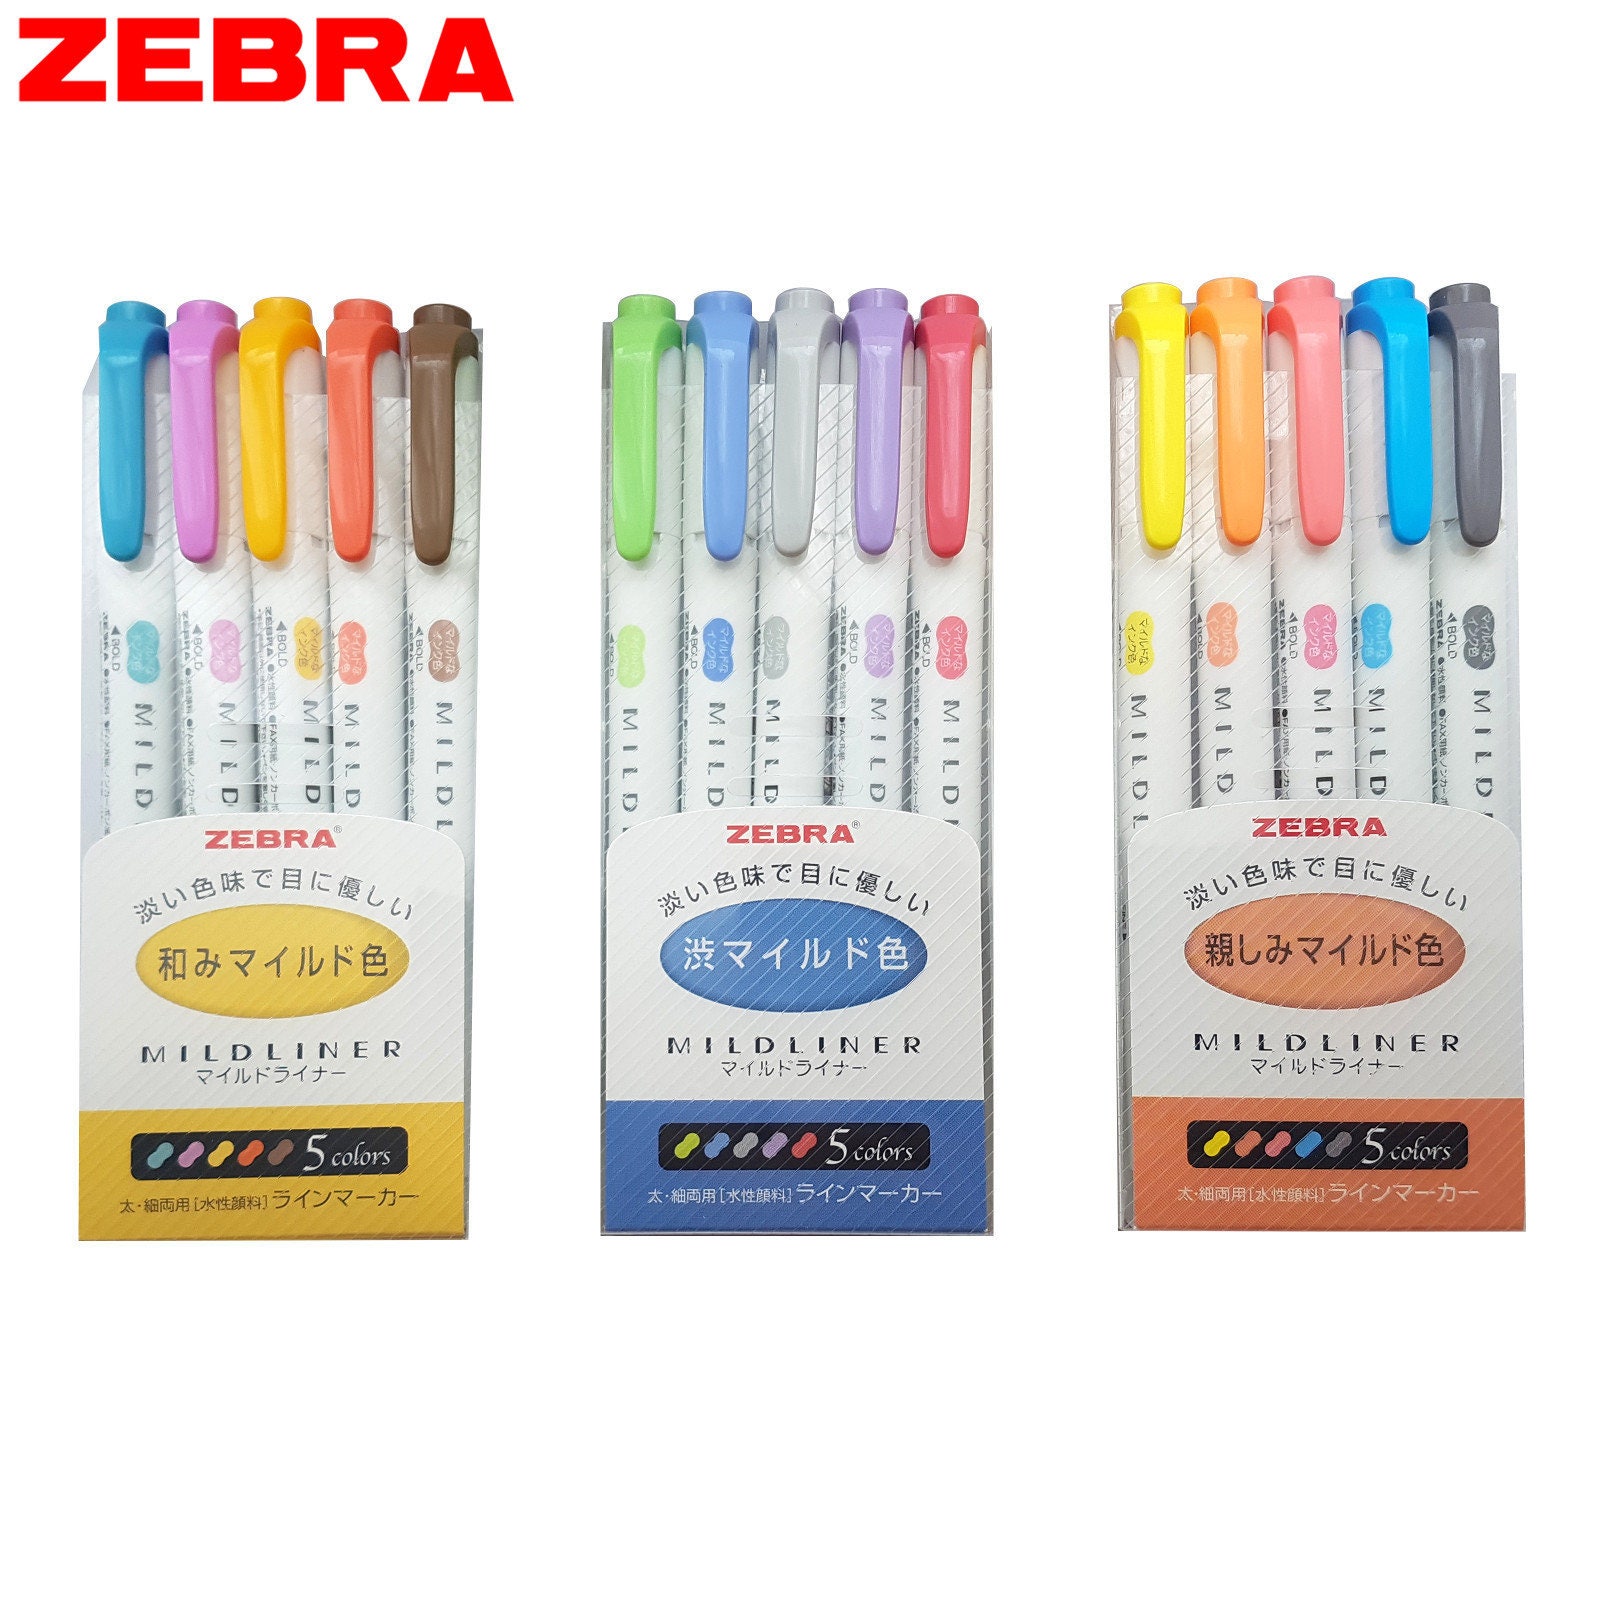 Zebra Mildliner Highlighter Marker Dual Tip Soft Assorted Color Pastel Pen  WKT7 Art Craft Japan Stationery Colour Bullet Journal 5 Pens -  Denmark